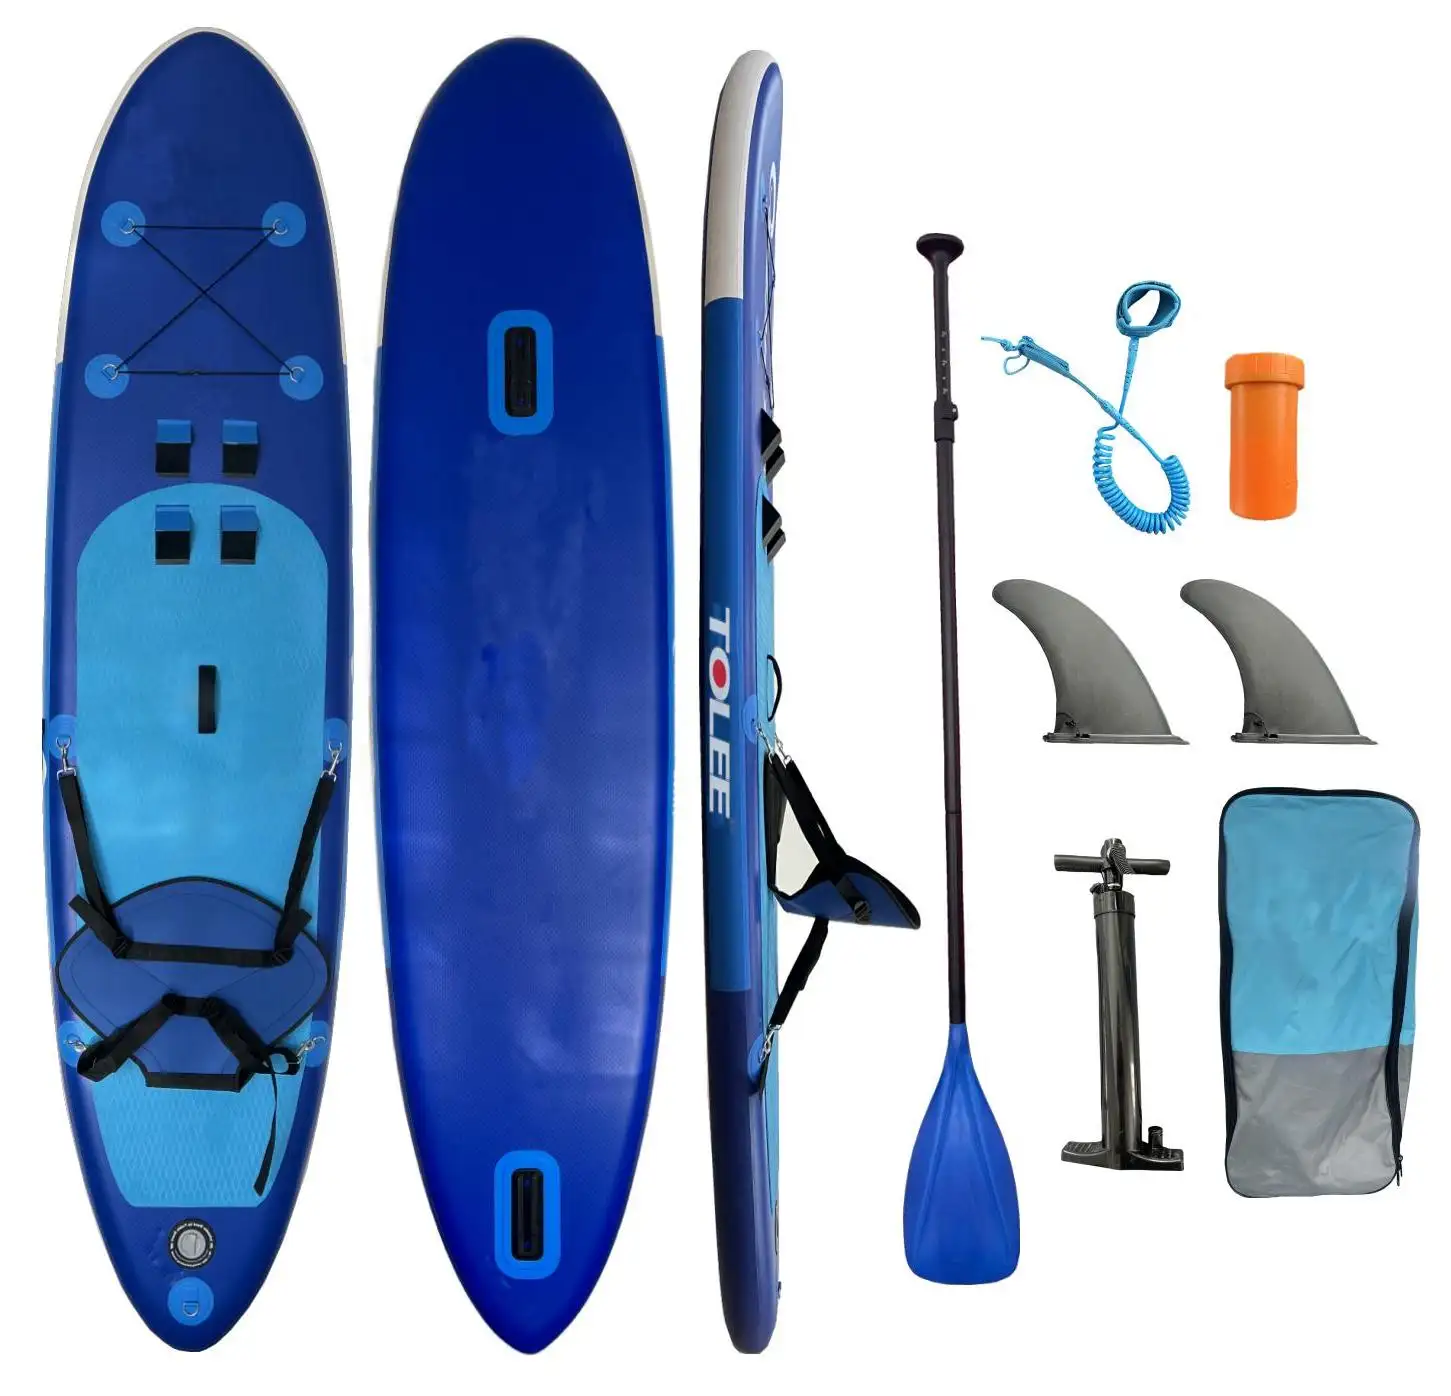 TOLEE planche de sup gonflable stand up paddle board jeu d'eau surf planche de surf sports nautiques isup